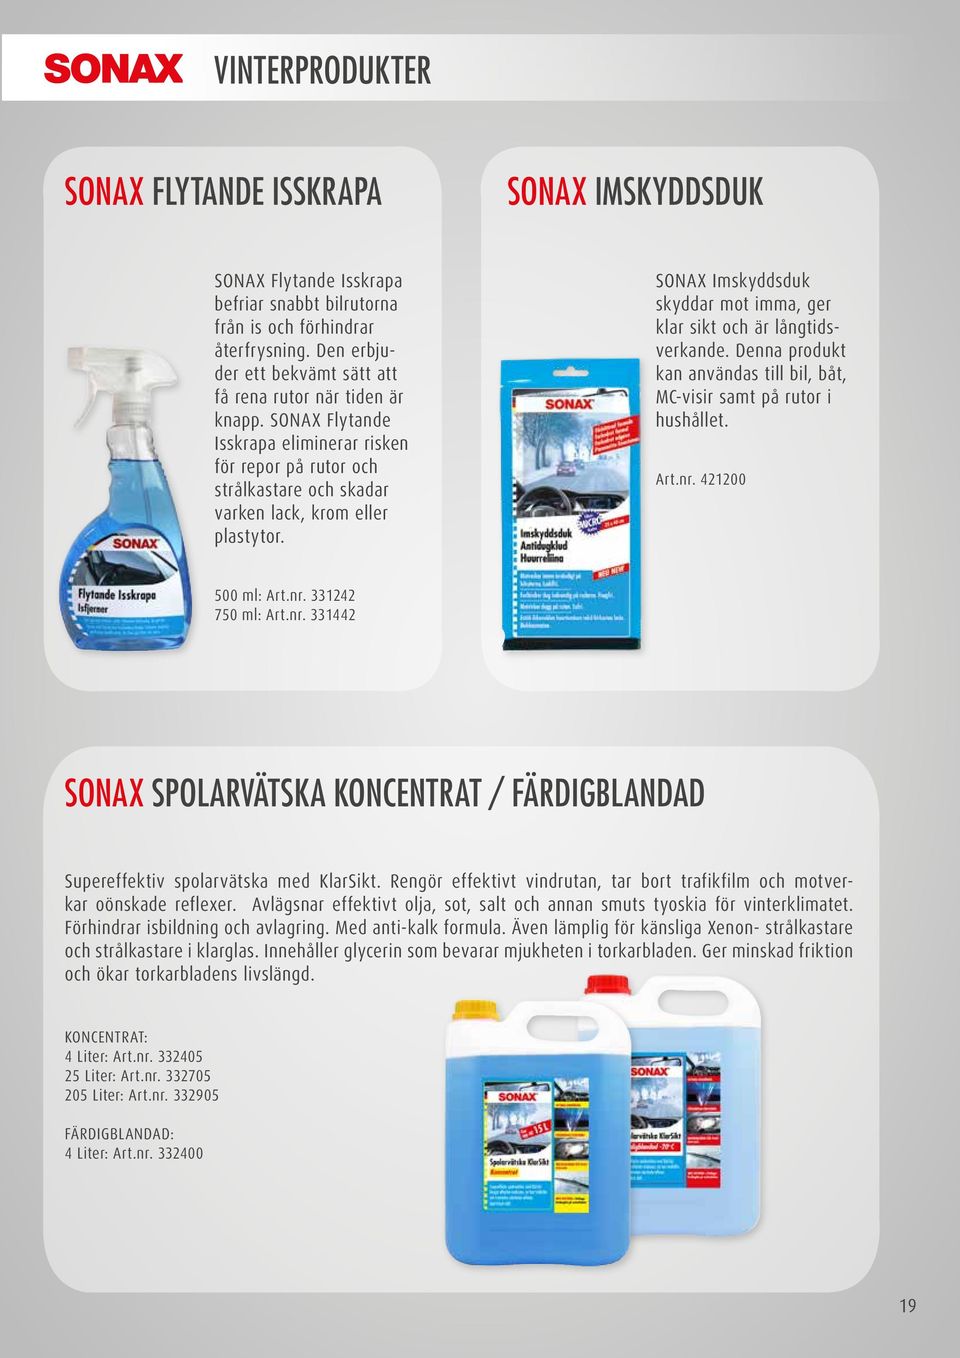 SONAX Imskyddsduk skyddar mot imma, ger klar sikt och är långtidsverkande. Denna produkt kan användas till bil, båt, MC-visir samt på rutor i hushållet. Art.nr. 421200 500 ml: Art.nr. 331242 750 ml: Art.